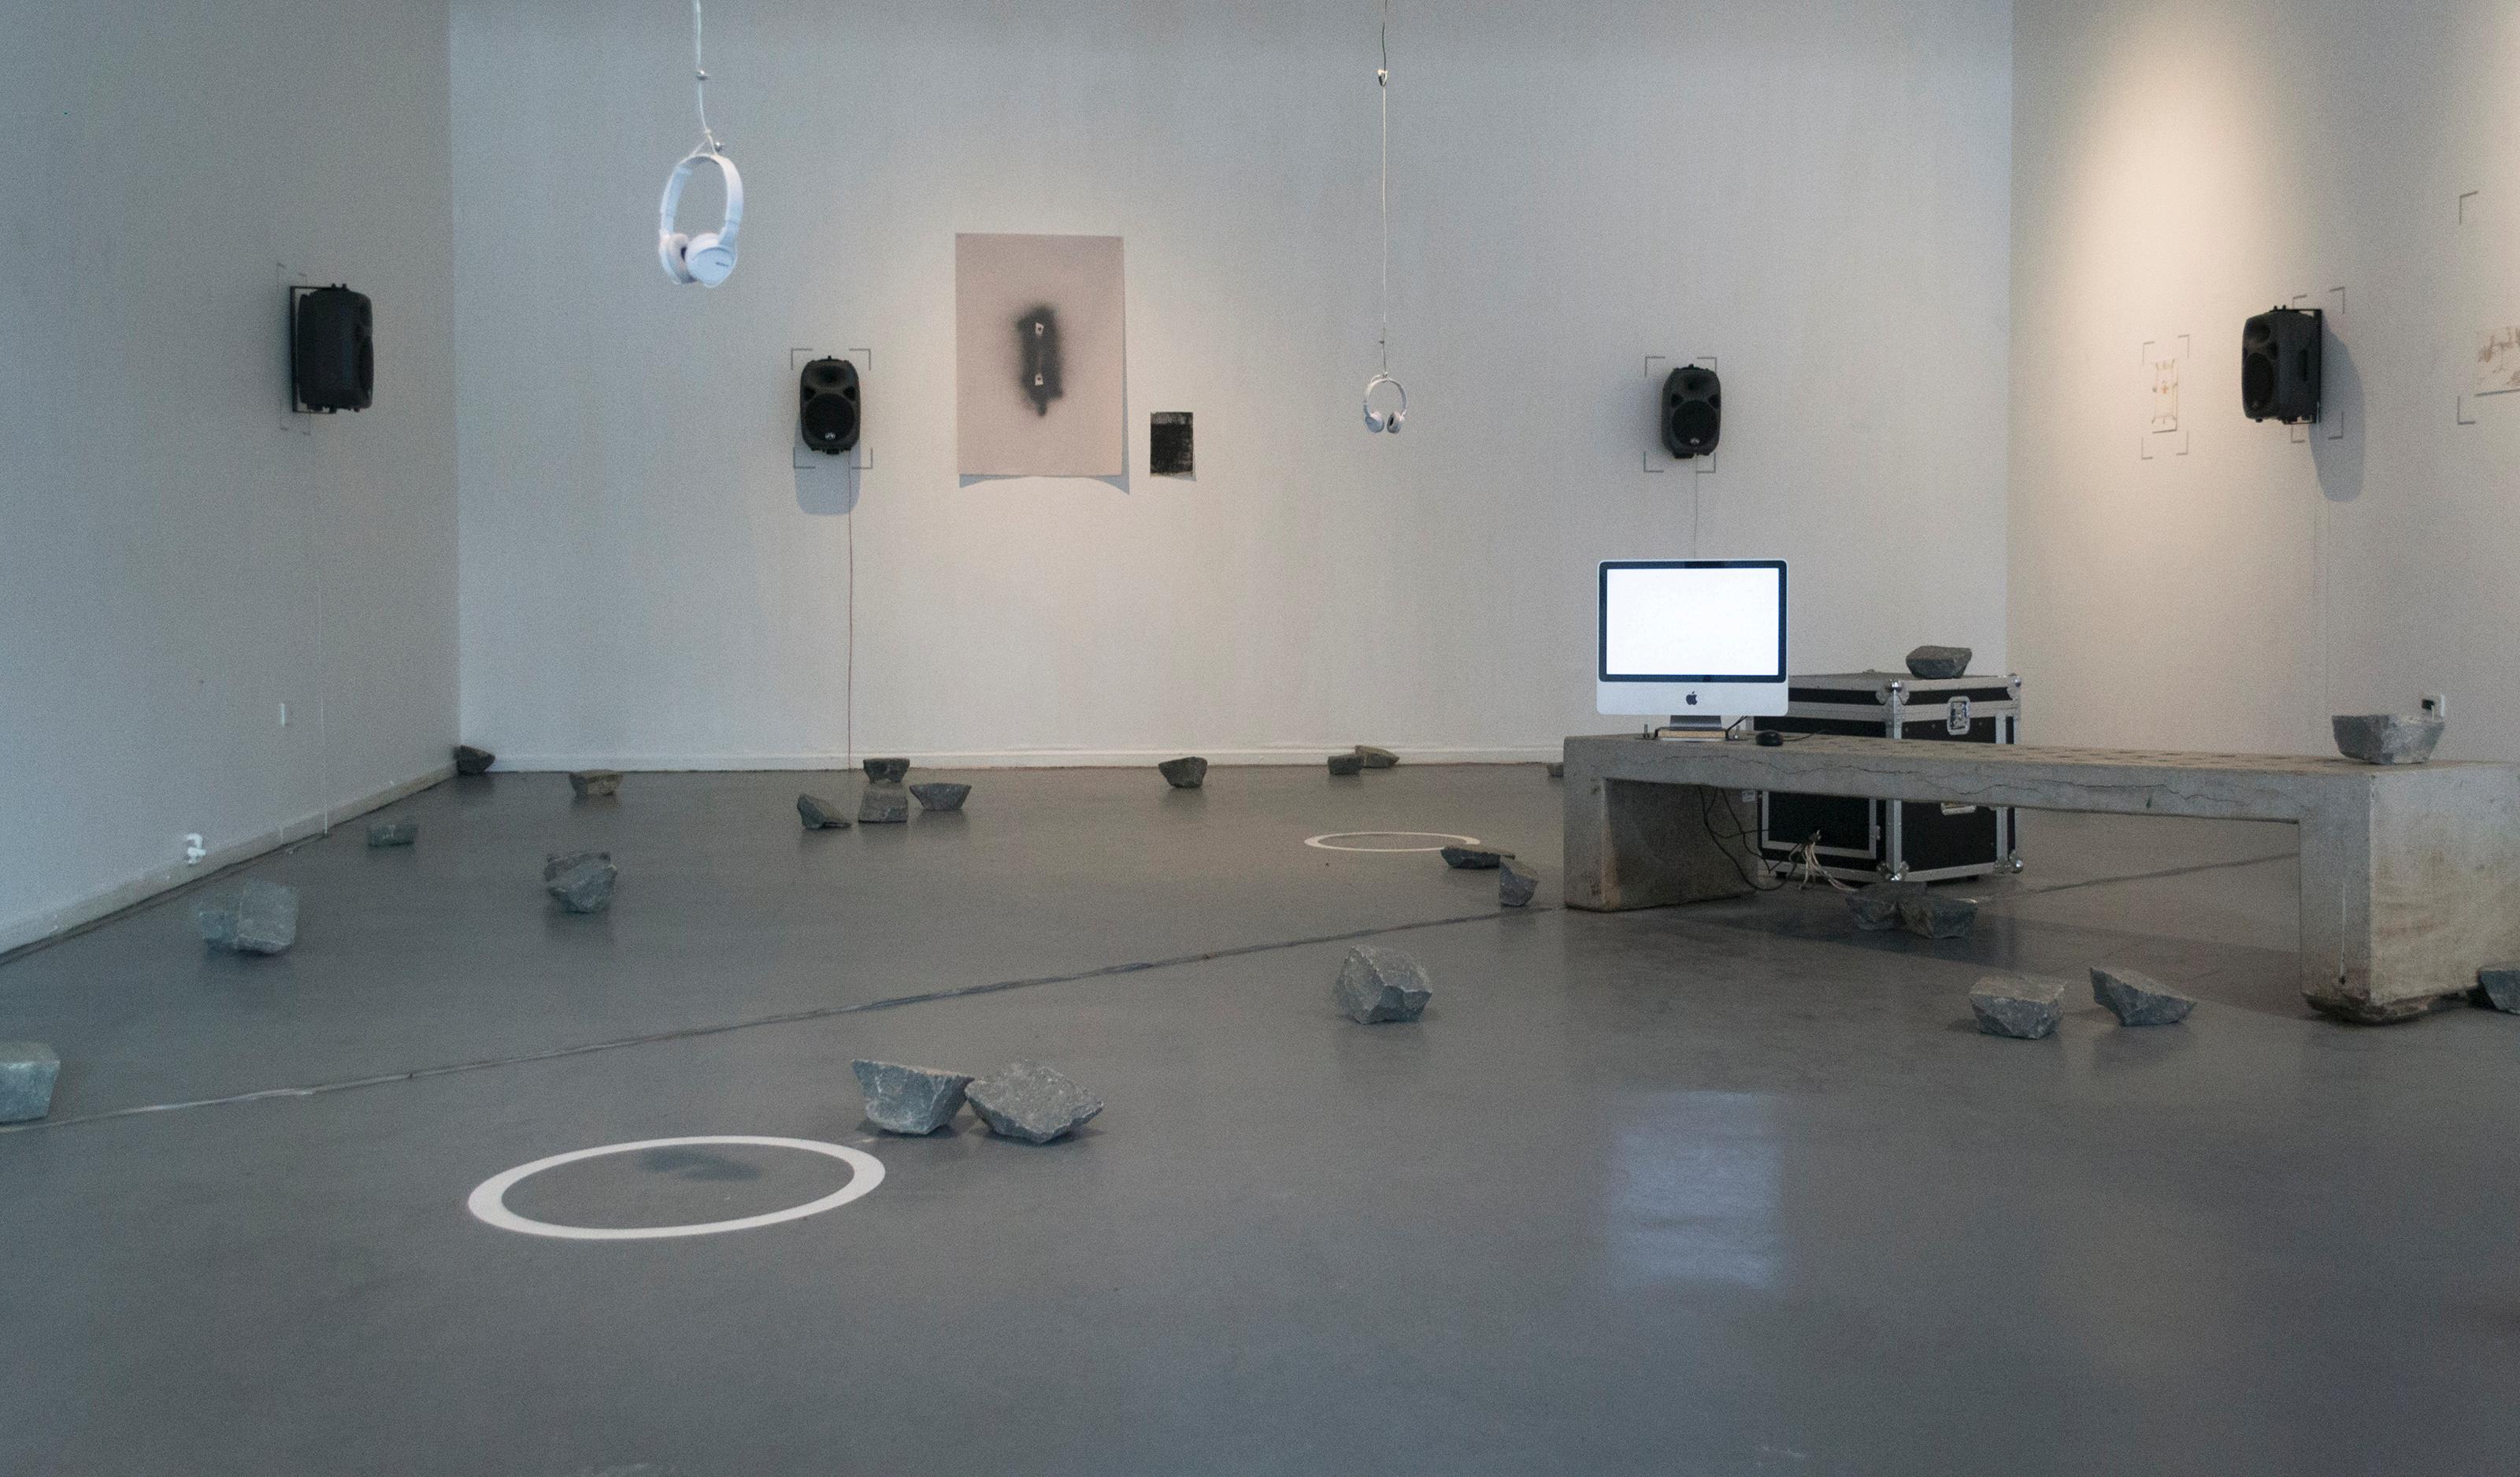 En Rauschmittel, el artista Rainer Krause trabaja el sonido como material estético. Con grabaciones binaurales y altavoces de distribución multicanal se invita a la escucha tridimensional de paisajes sonoros en la ciudad.